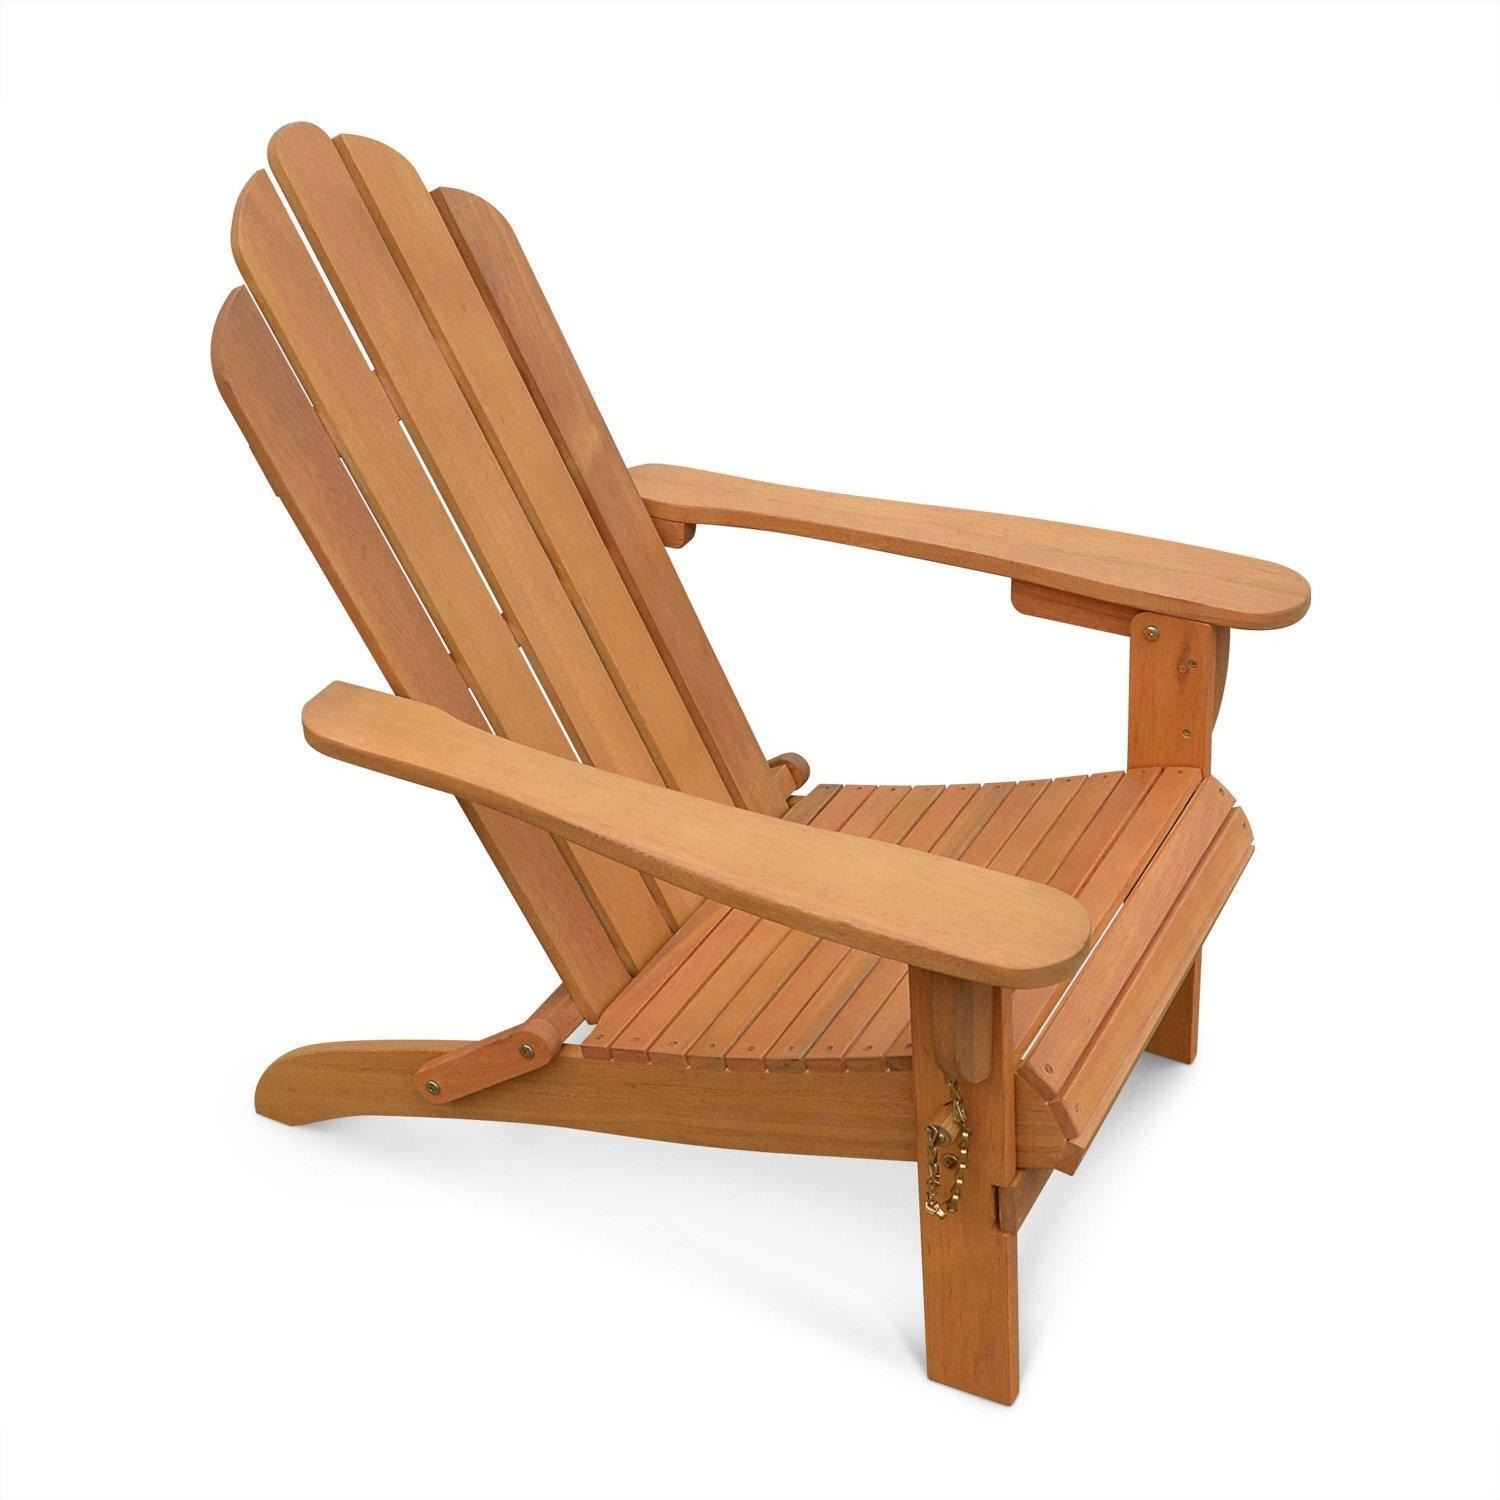 Foldable Wooden Retro Garden Armchair - image 1